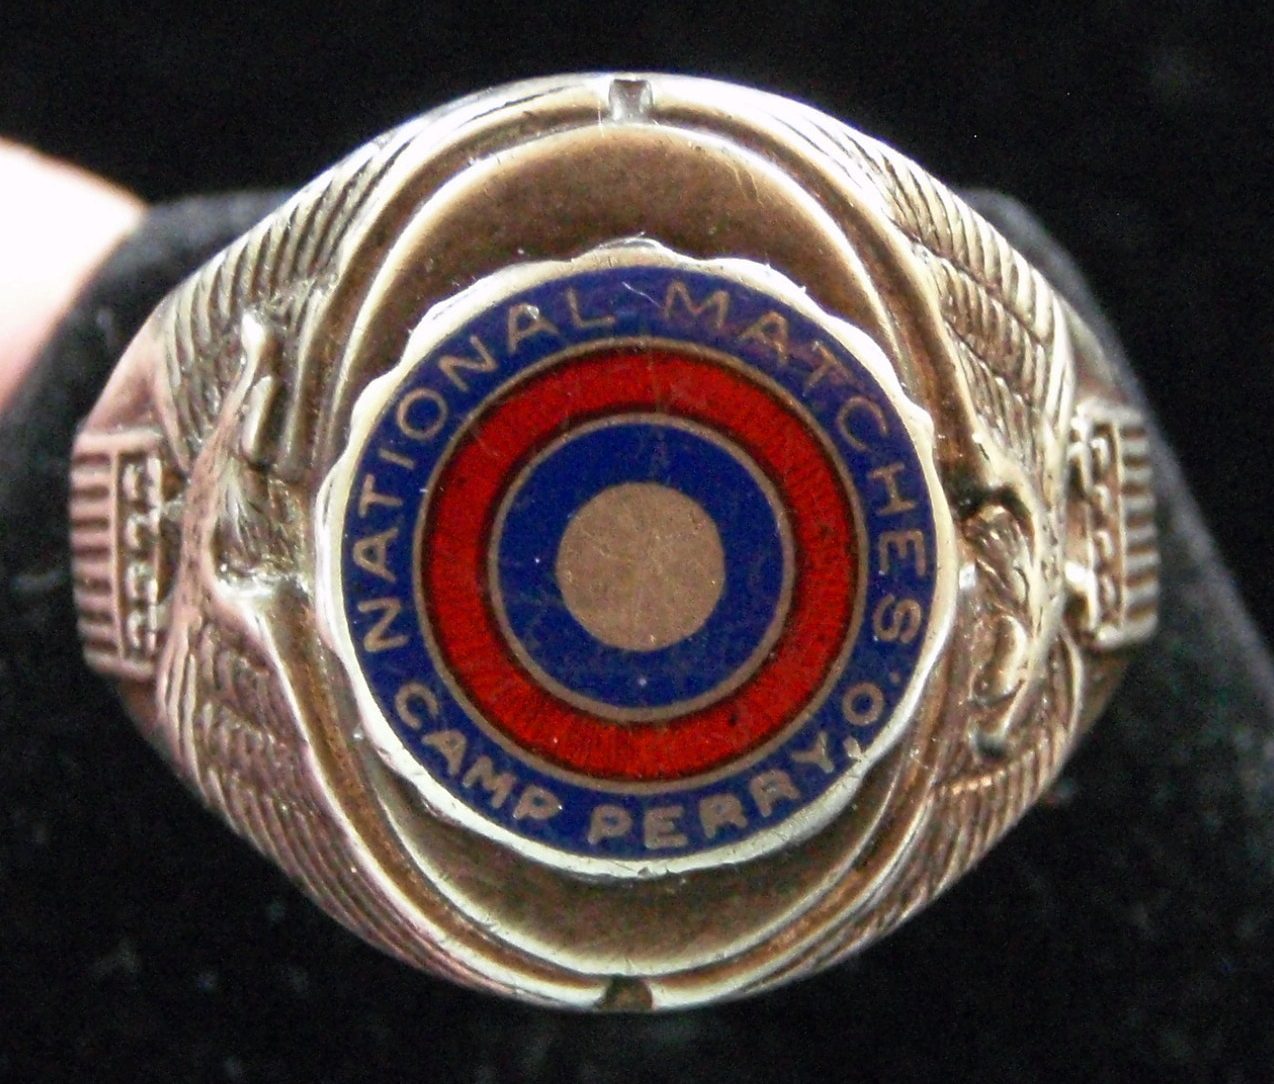 Кольцо выпускника учебного центра Национальной гвардии «Camp Perry», изготовленное с применением цветной эмали.